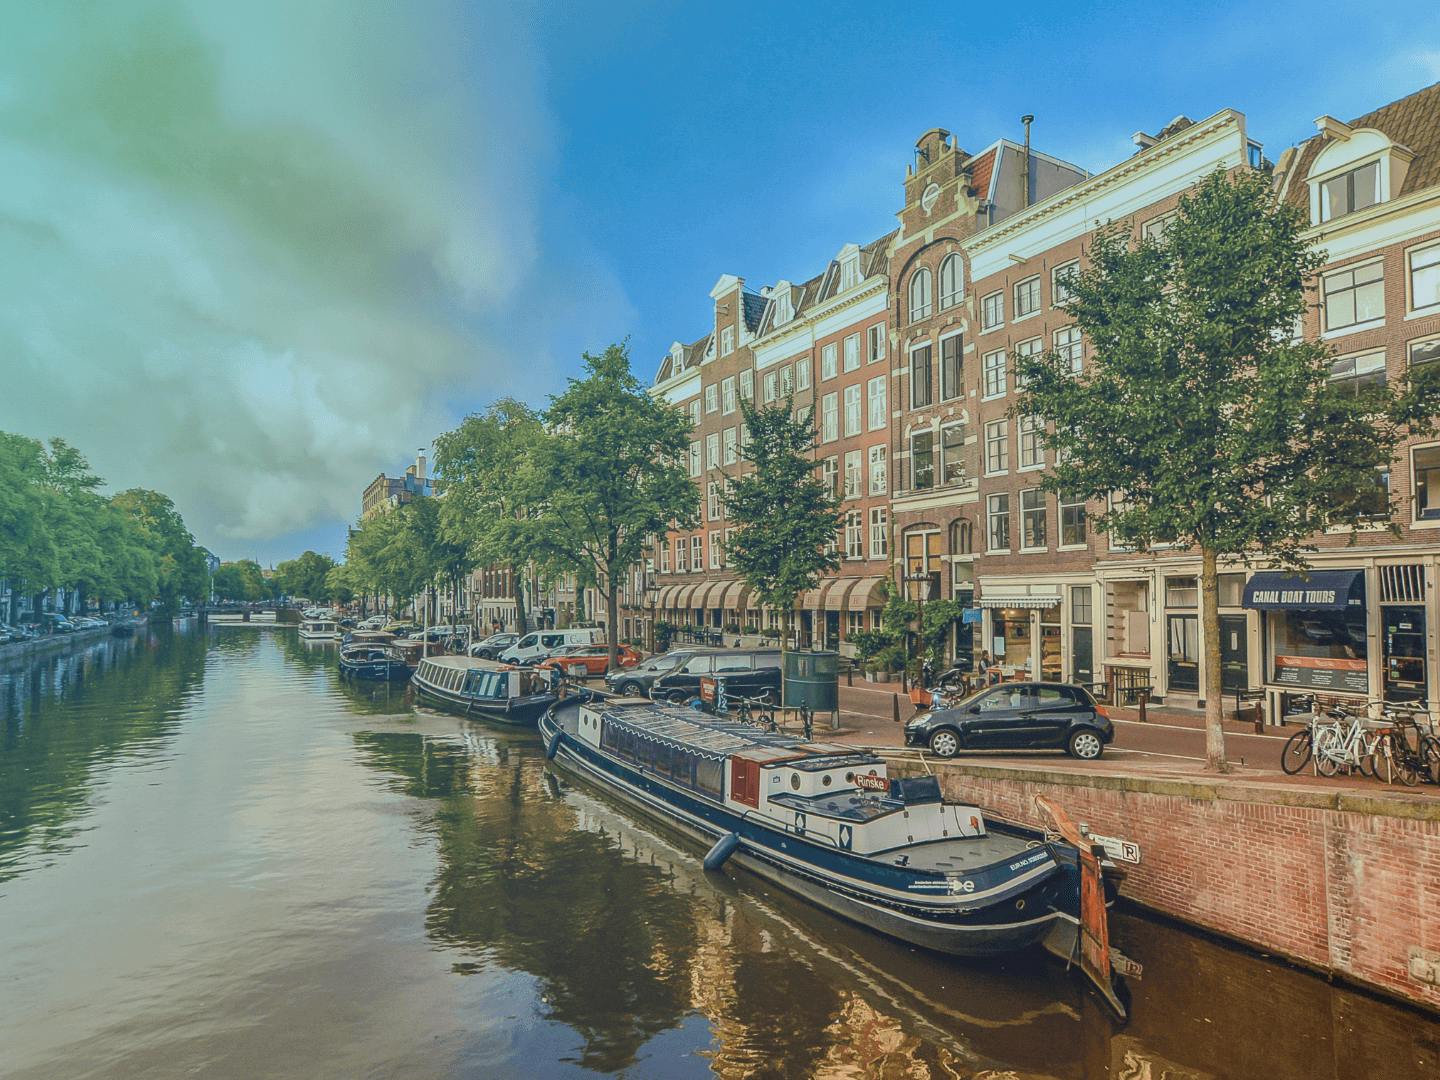 Hollanda'da kanala karşı dizilmiş binalar. Tekneler park edilmiş. İnsanlar kanal kenarında bisiklet sürüyor. 